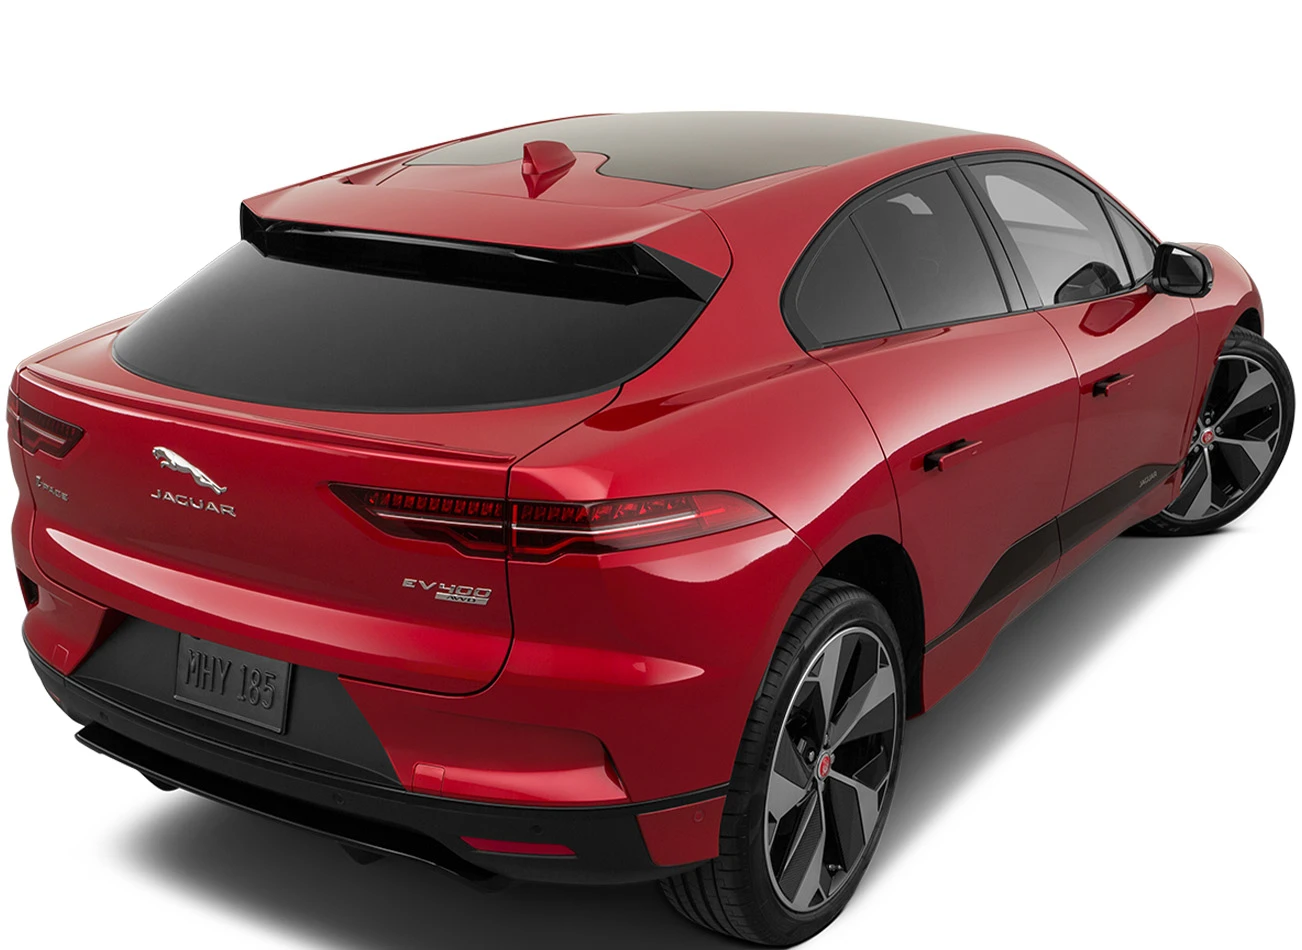 2019 Jaguar I-Pace: Exterior rear view | CarMax